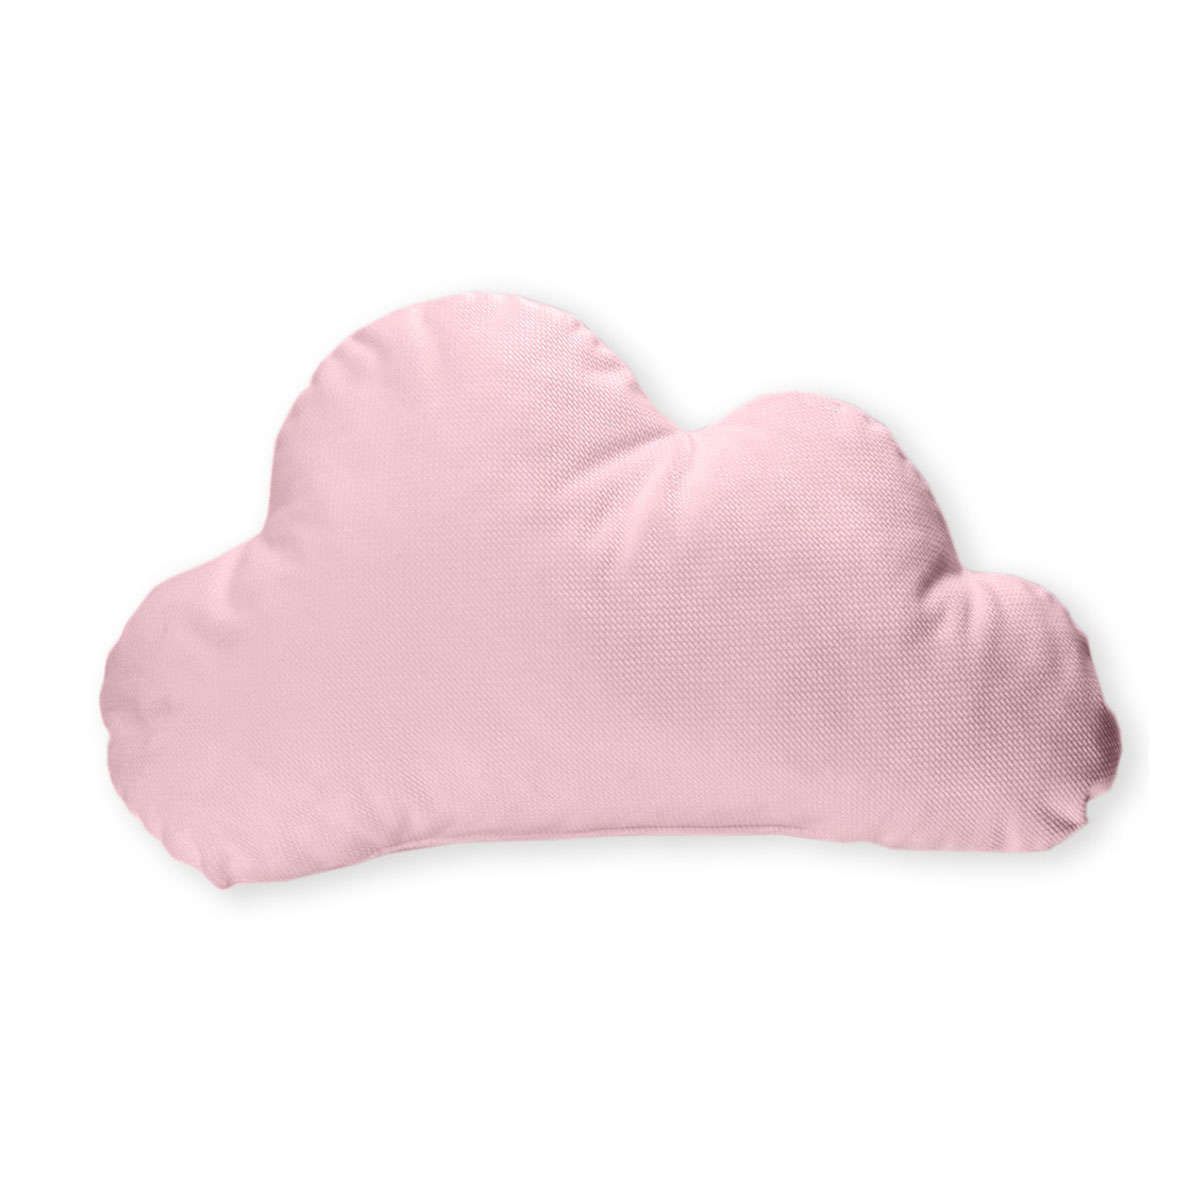 Διακοσμητικό μαξιλάρι βελουτέ Σύννεφο des.131 pink baby oliver